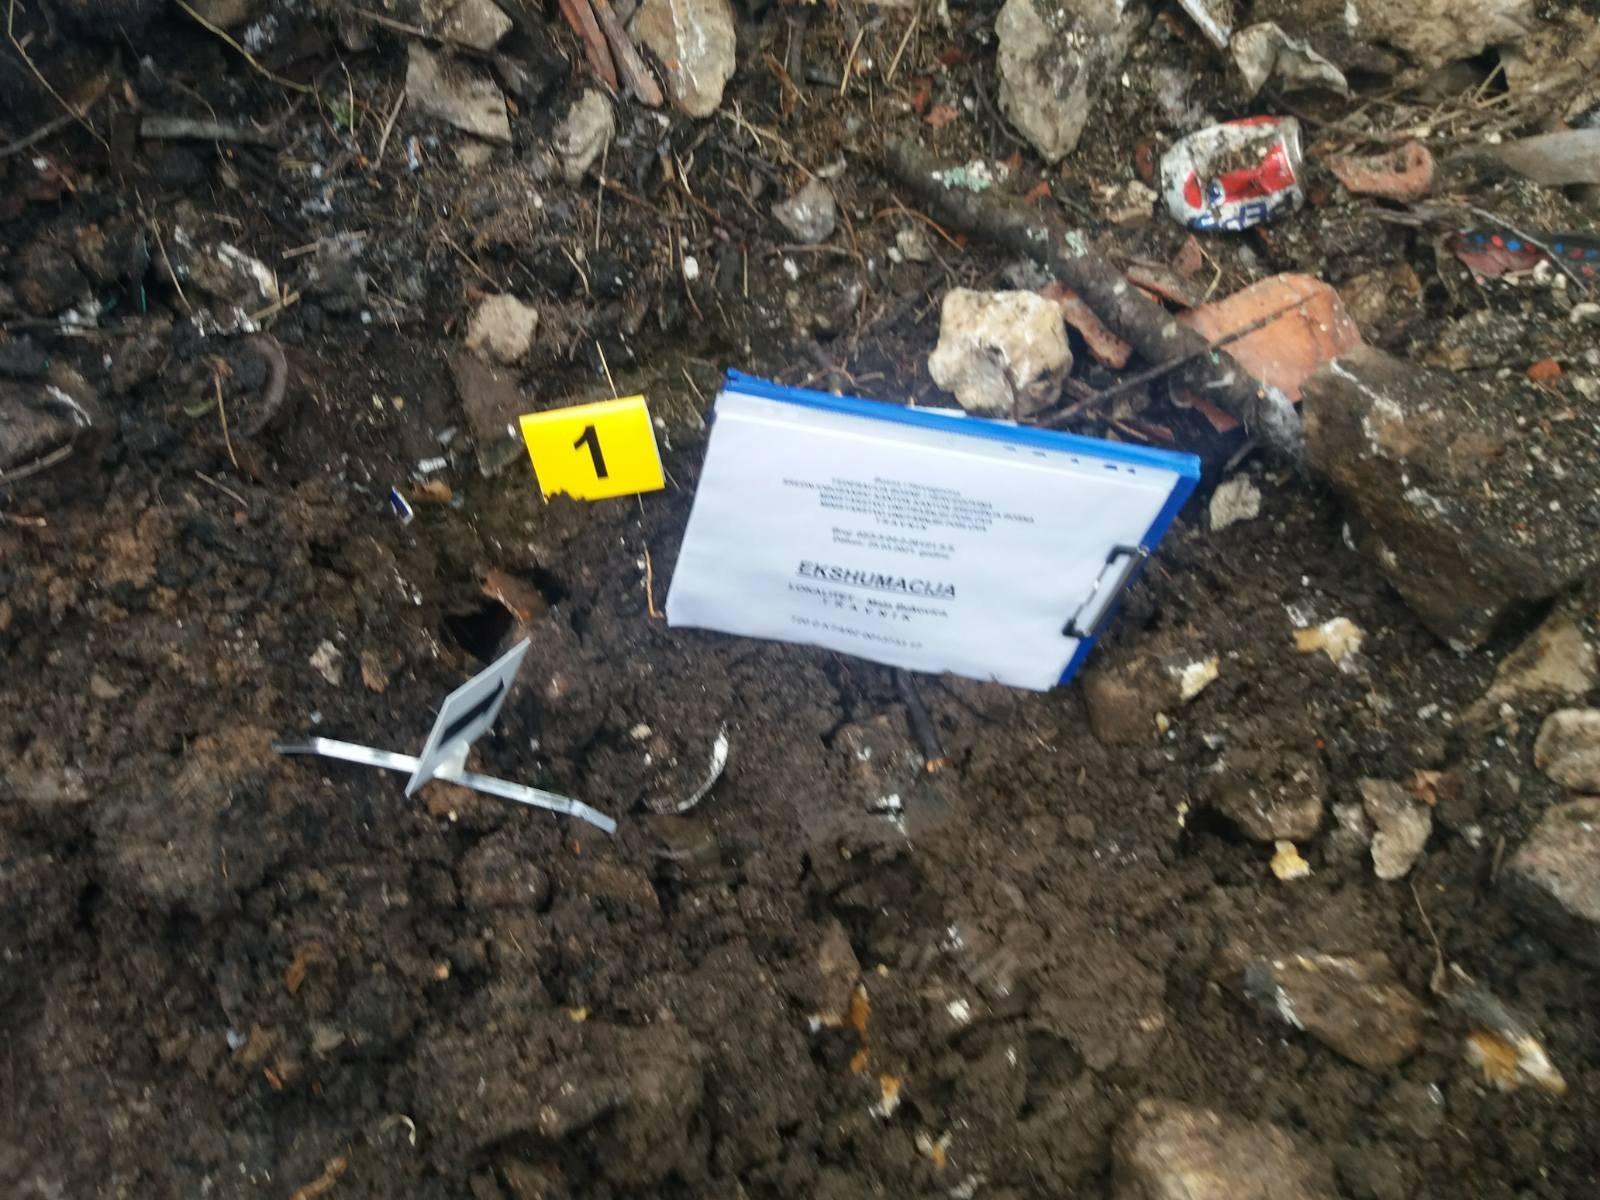 Tokom ekshumacije kod Travnika pronađeni posmrtni ostaci jedne osobe